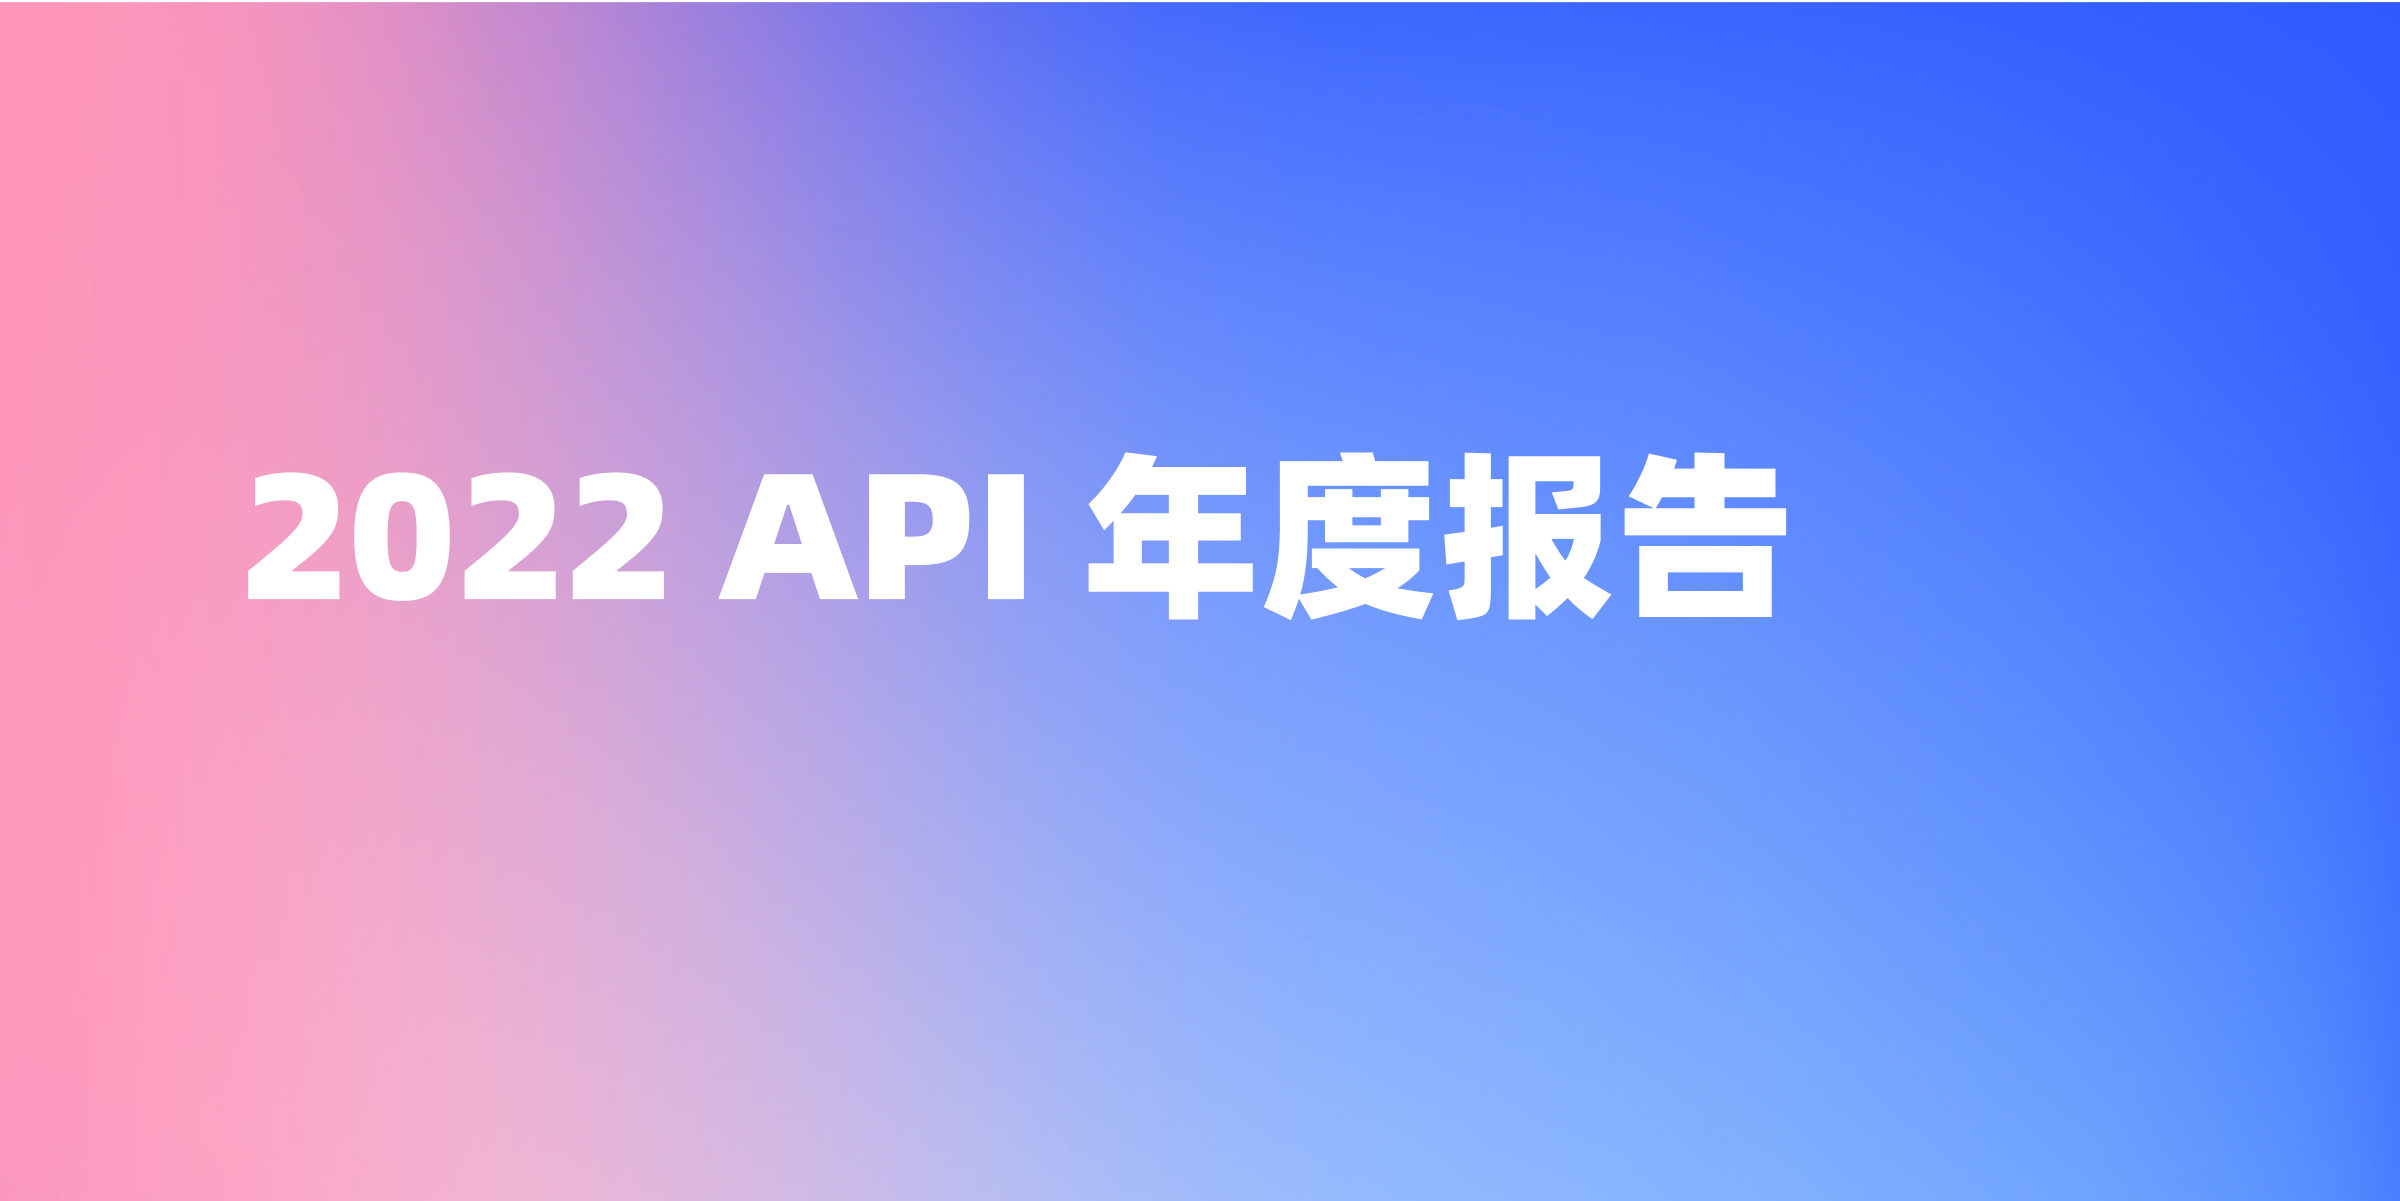 2022 API 年度报告